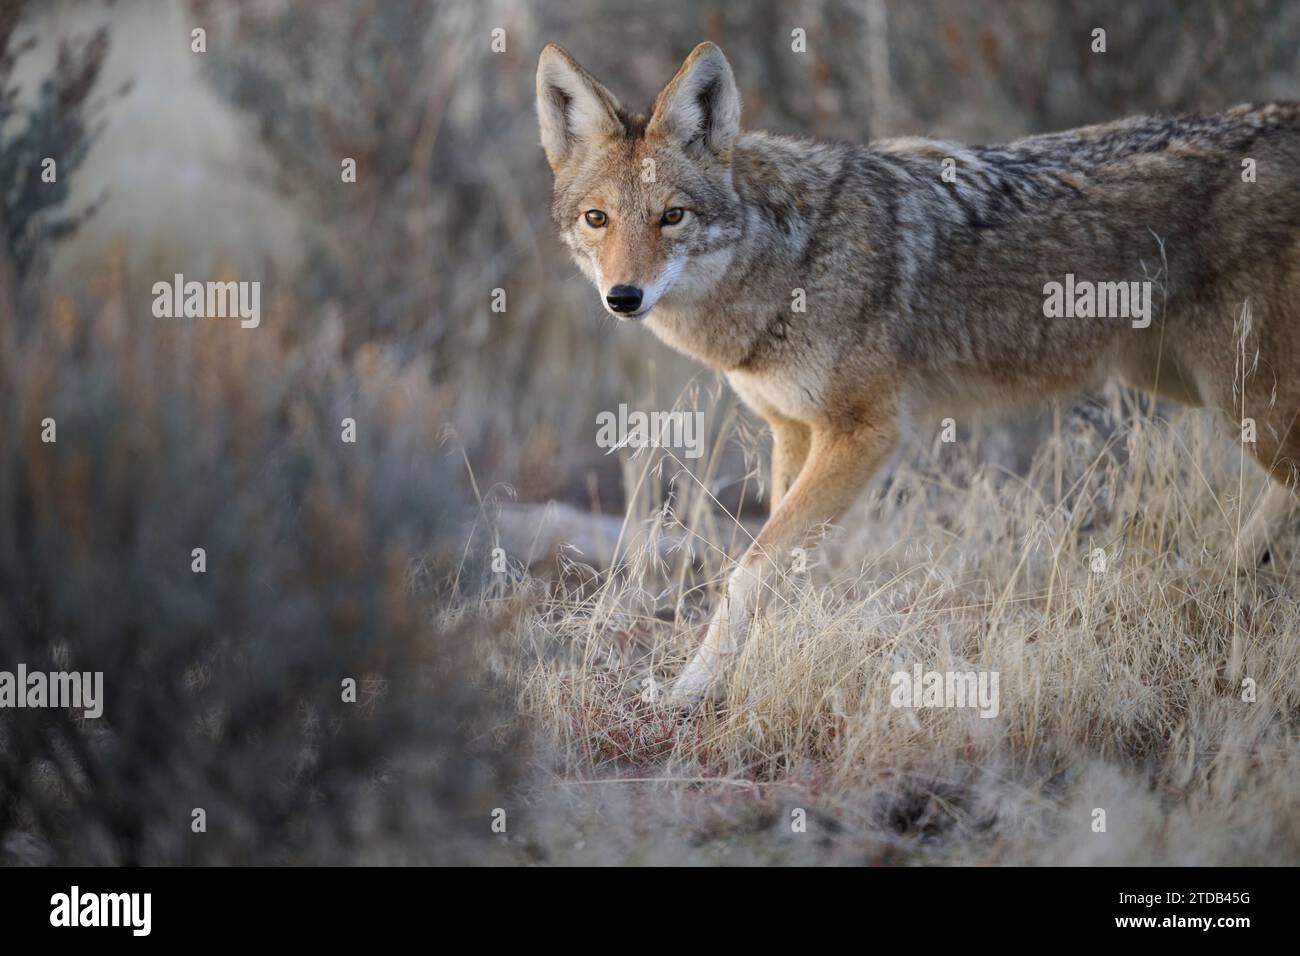 Coyote walking through the brush, Utah Stock Photo